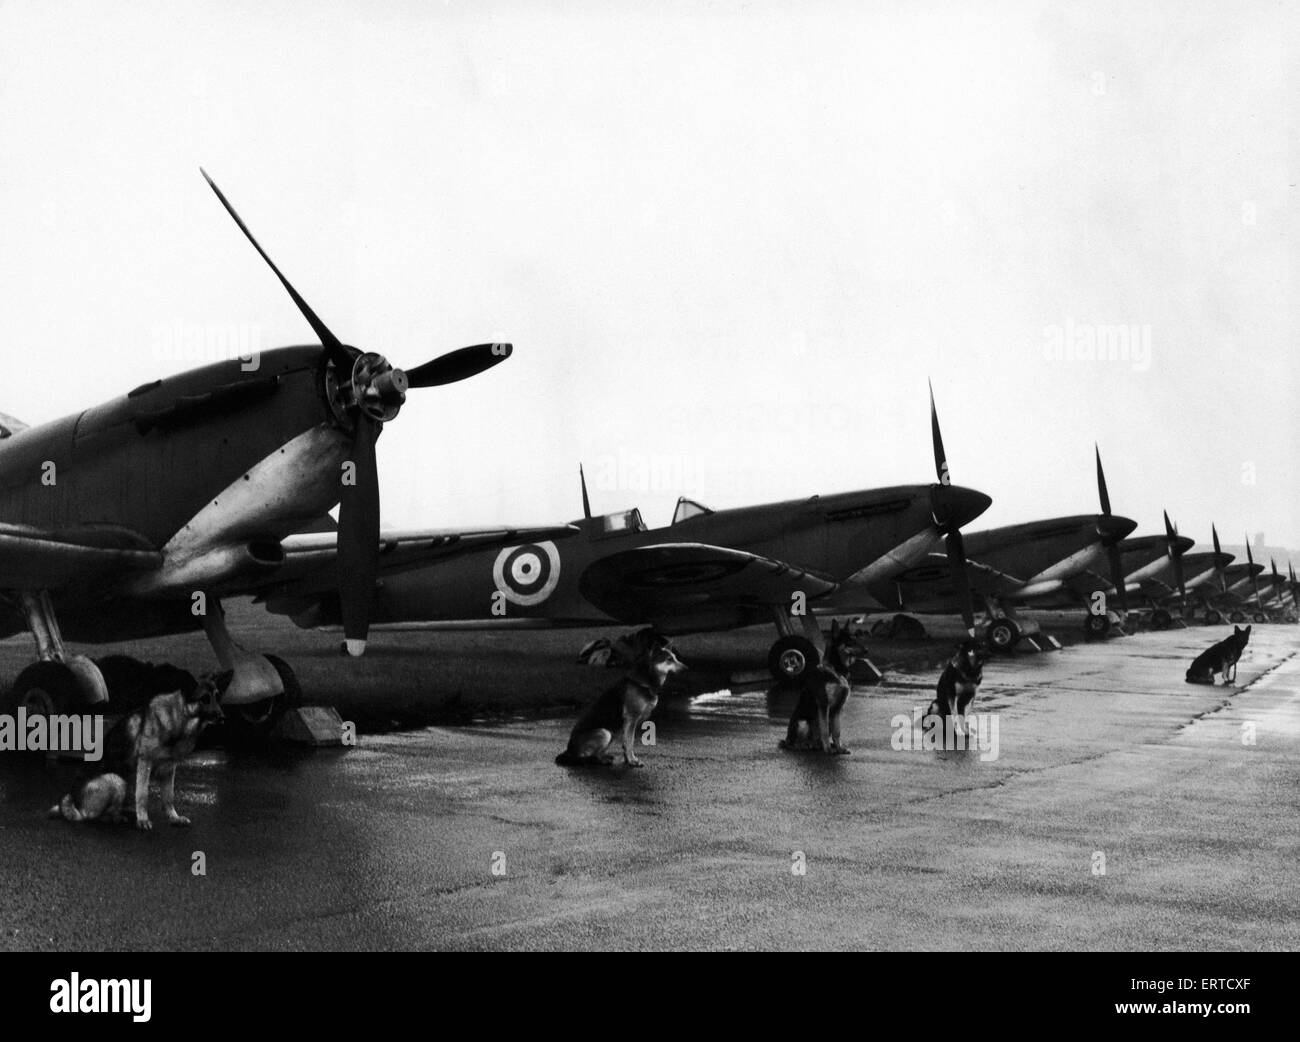 Doce aviones caza Spitfire alineadas en el aire tira en North Weald, esperando la llamada antes de filmar para una batalla de Gran Bretaña película, bajo guardia de seis perros de seguridad pertenecientes a "Seguridad" Rentadog firme. 9 de mayo de 1968. Foto de stock